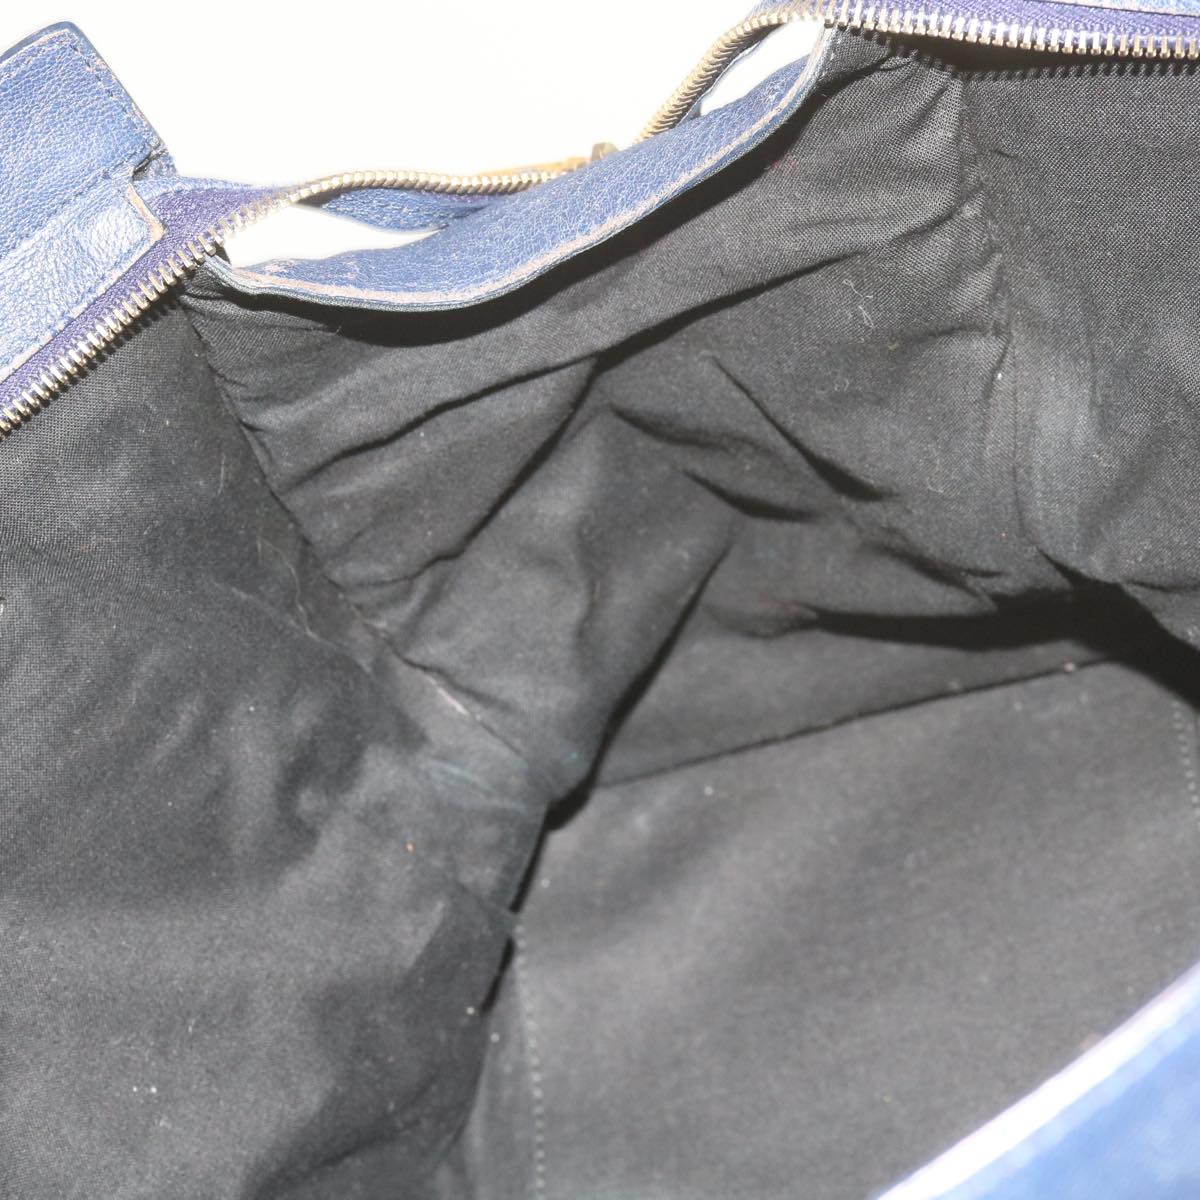 SAINT LAURENT Cavas Chyc Hand Bag Leather Navy 275091 Auth am5374